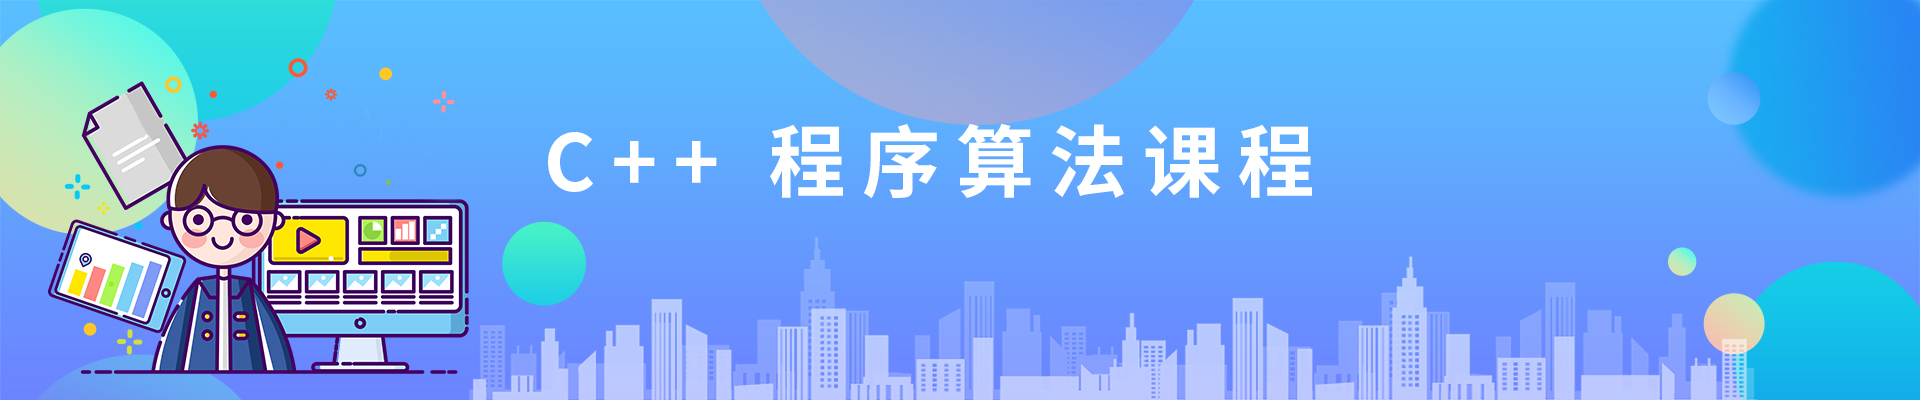 南京新街口商贸小码王少儿编程培训机构